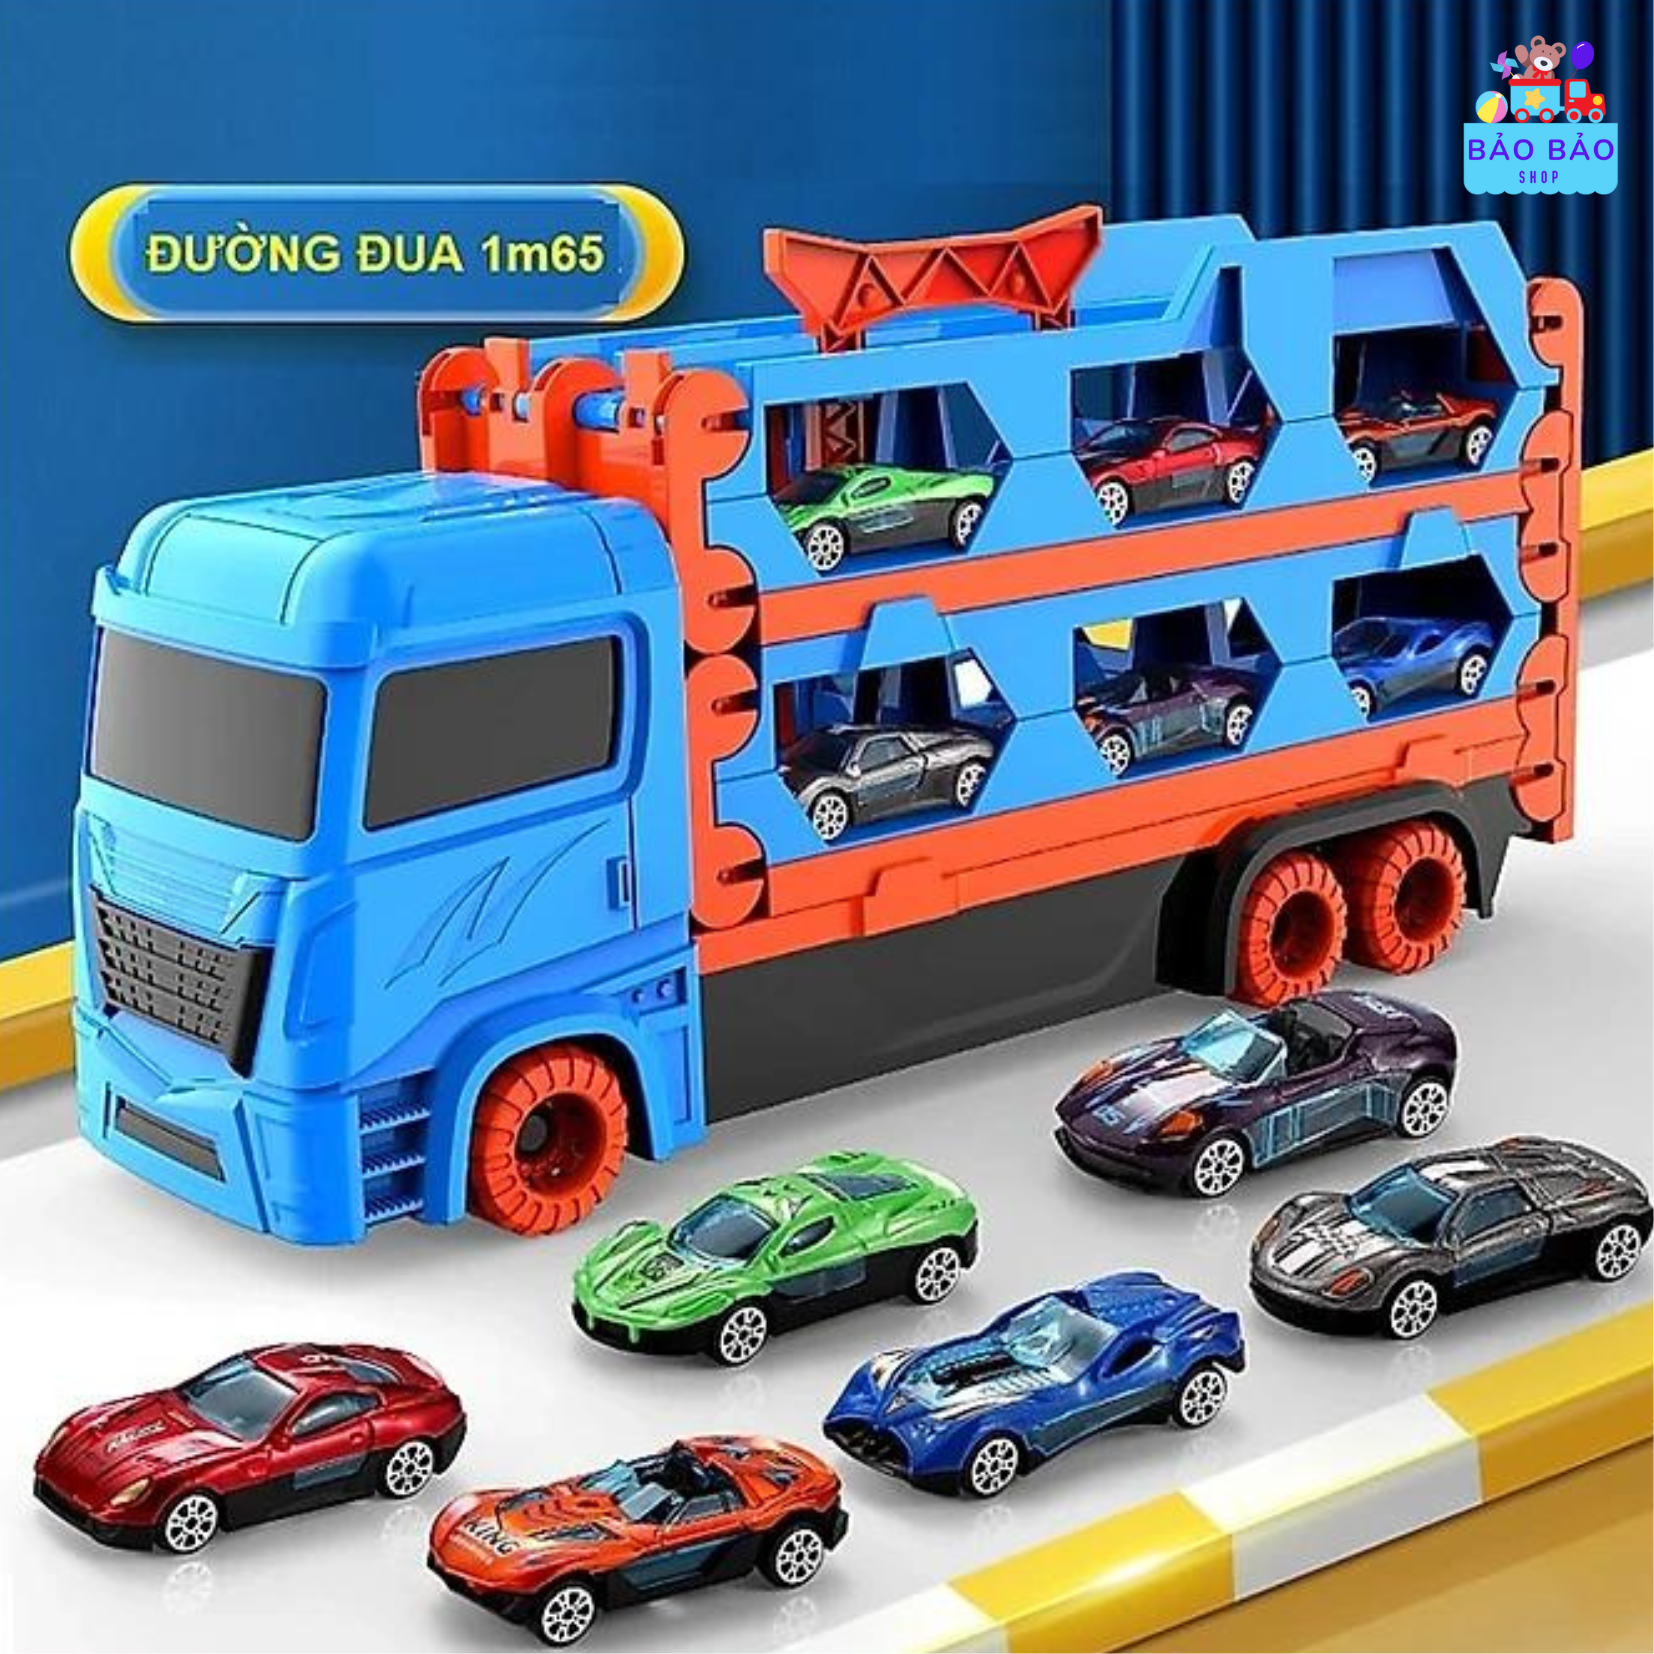 Đường đua Dài 1m6 Ô tô đồ chơi xe tải 3 tầng kèm 6 xe đua nhỏ mô hình